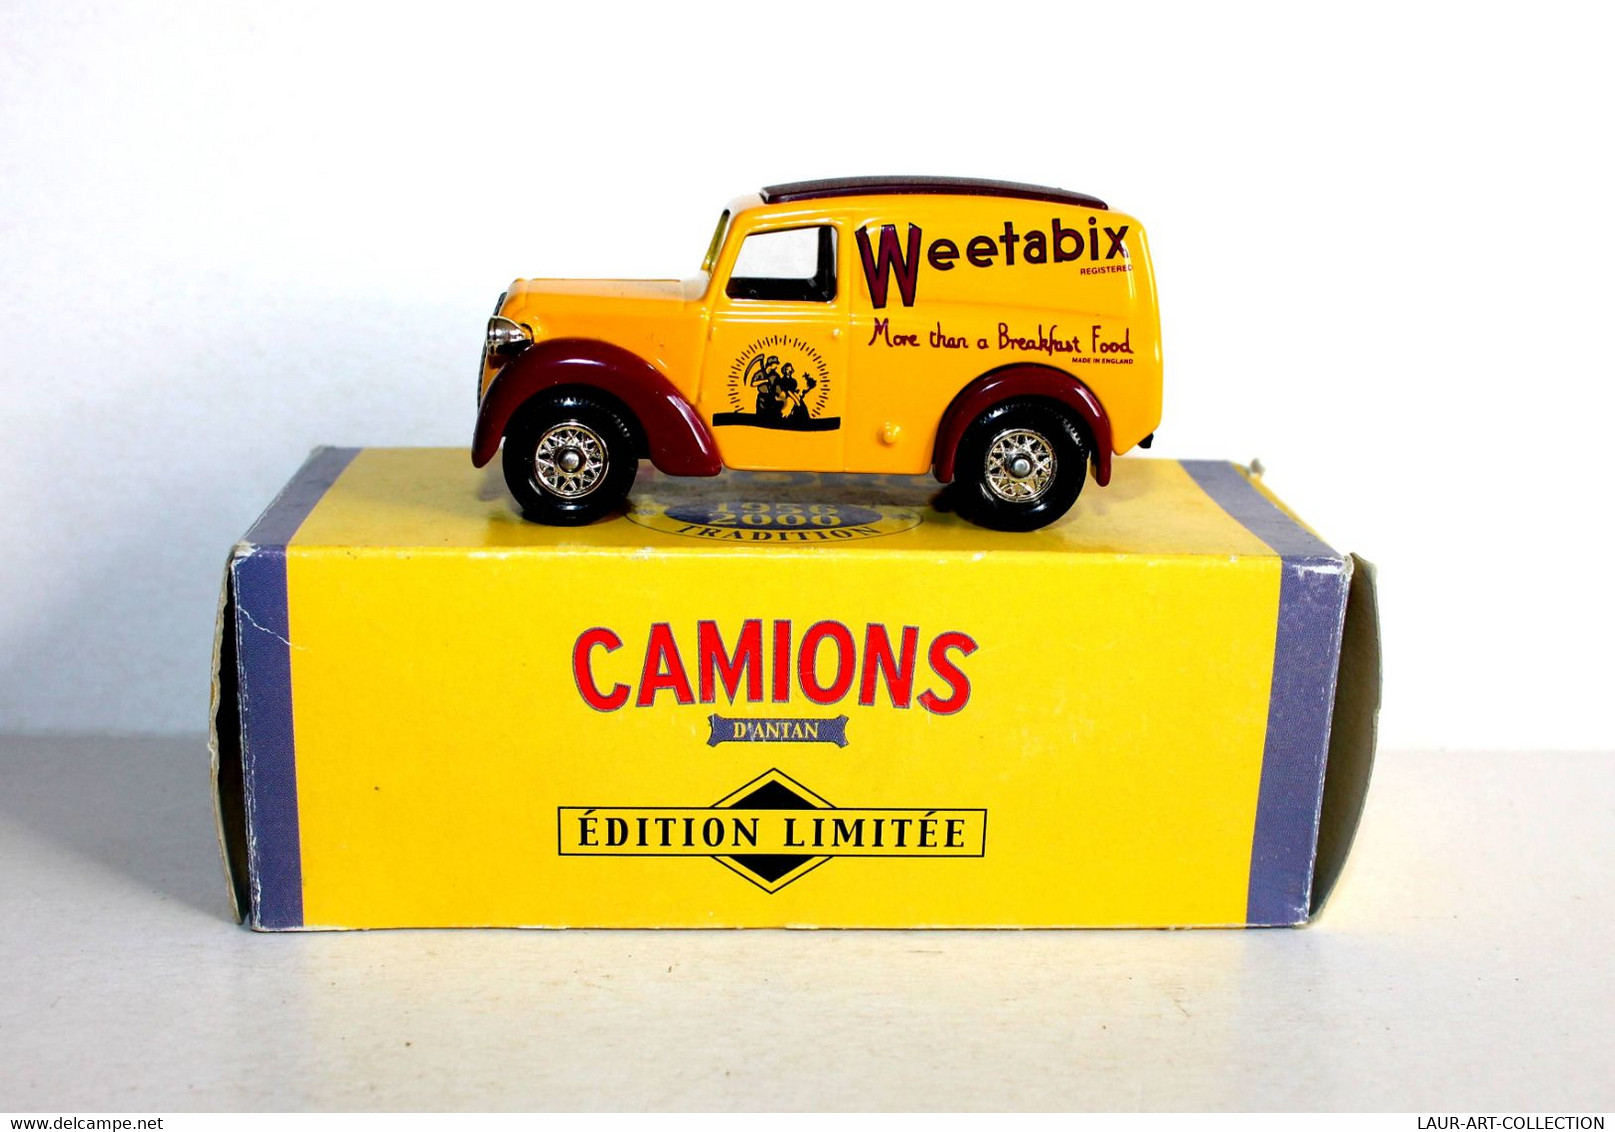 CORGI - CAMIONNETTE MORRIS Z VAN 1950 - PUB: WEETABIX - CAMION D'ANTAN 1956-2000 - AUTOMOBILE MINIATURE (2811.37) - Corgi Toys